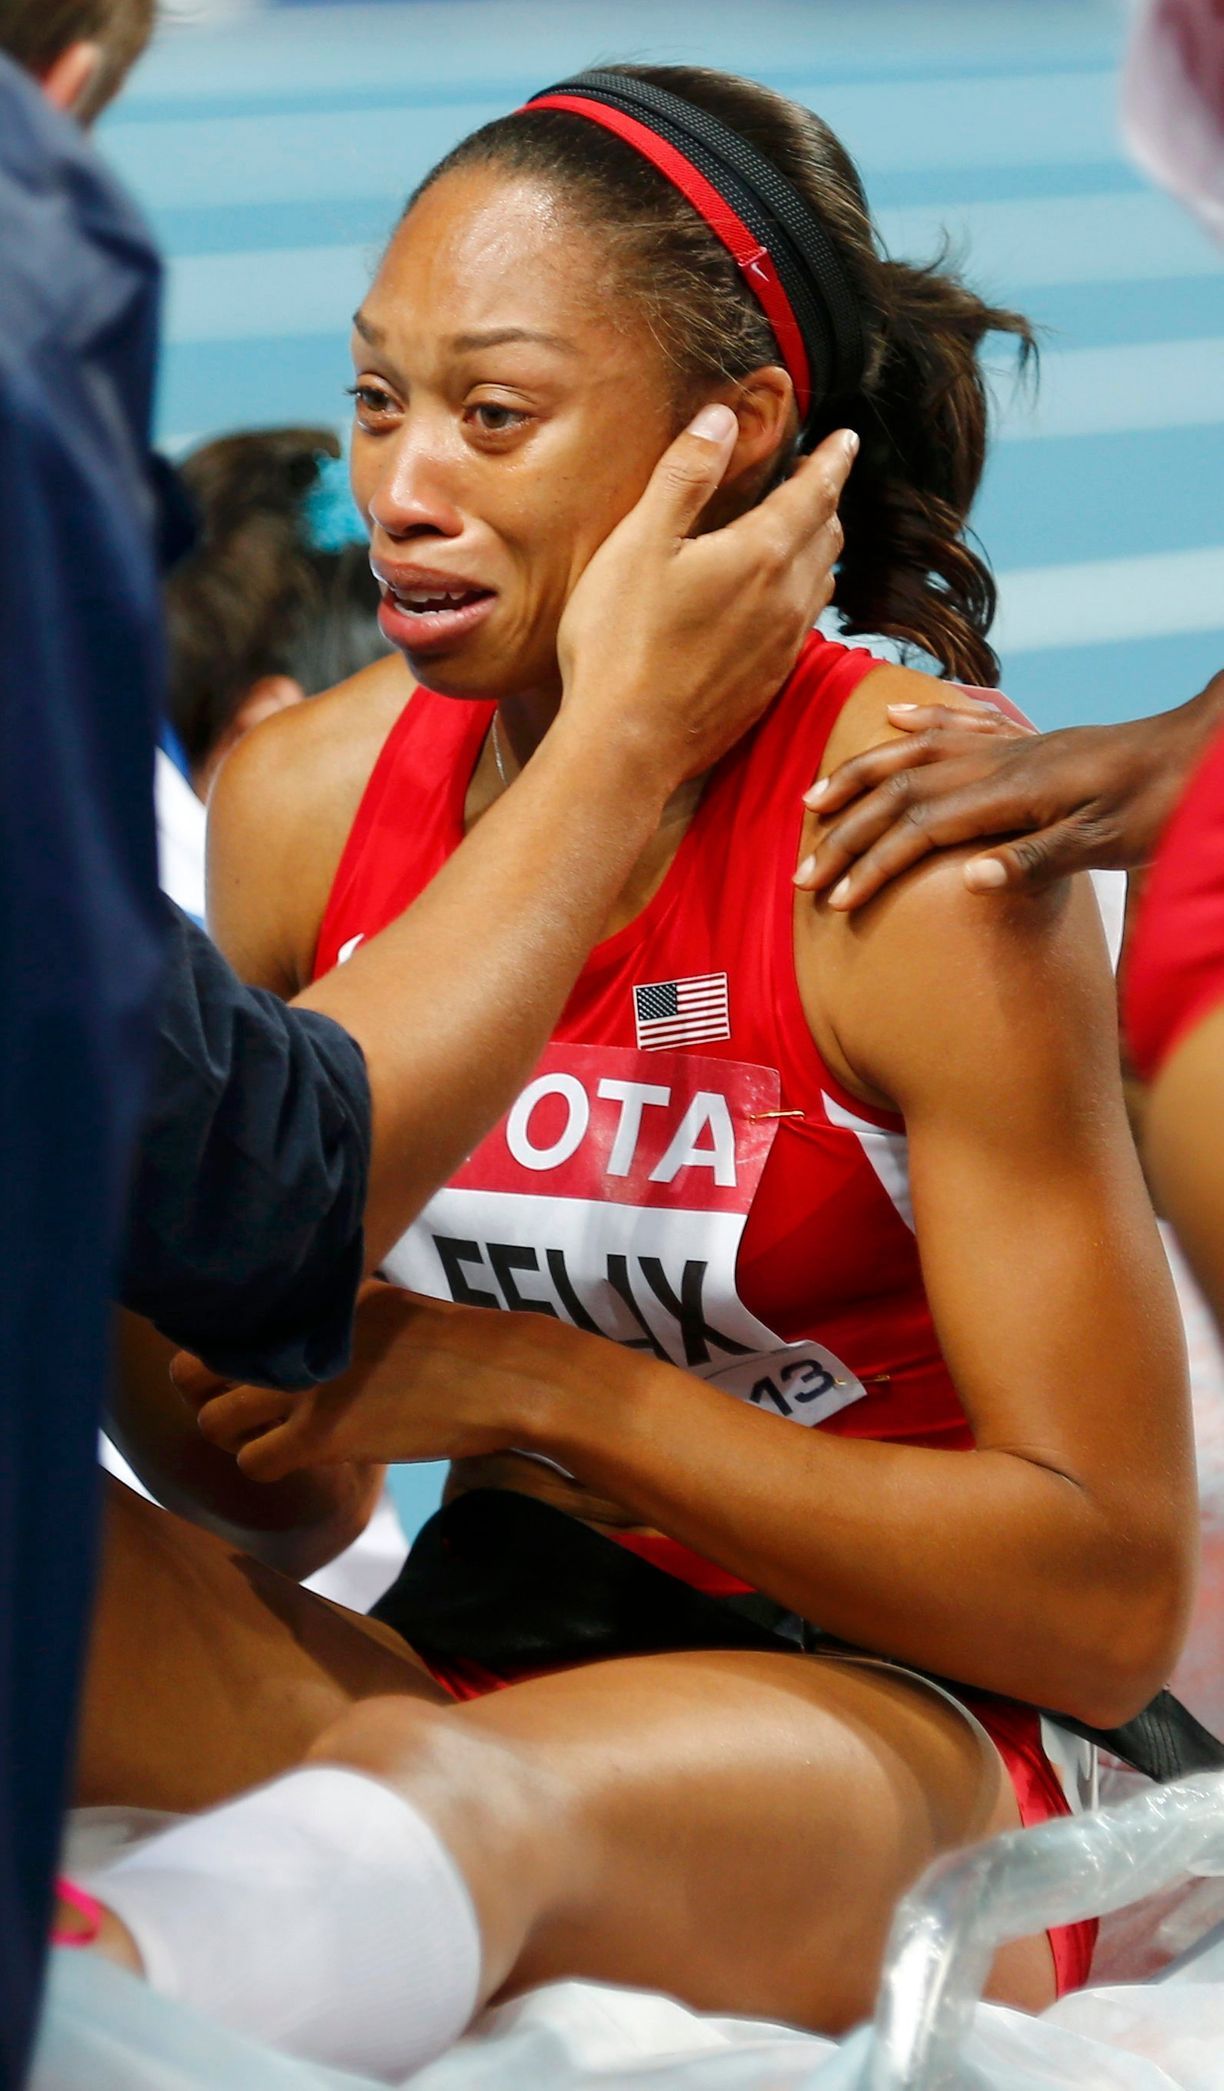 MS v atletice 2013, 200 m - finále: zraněná Allyson Felixová